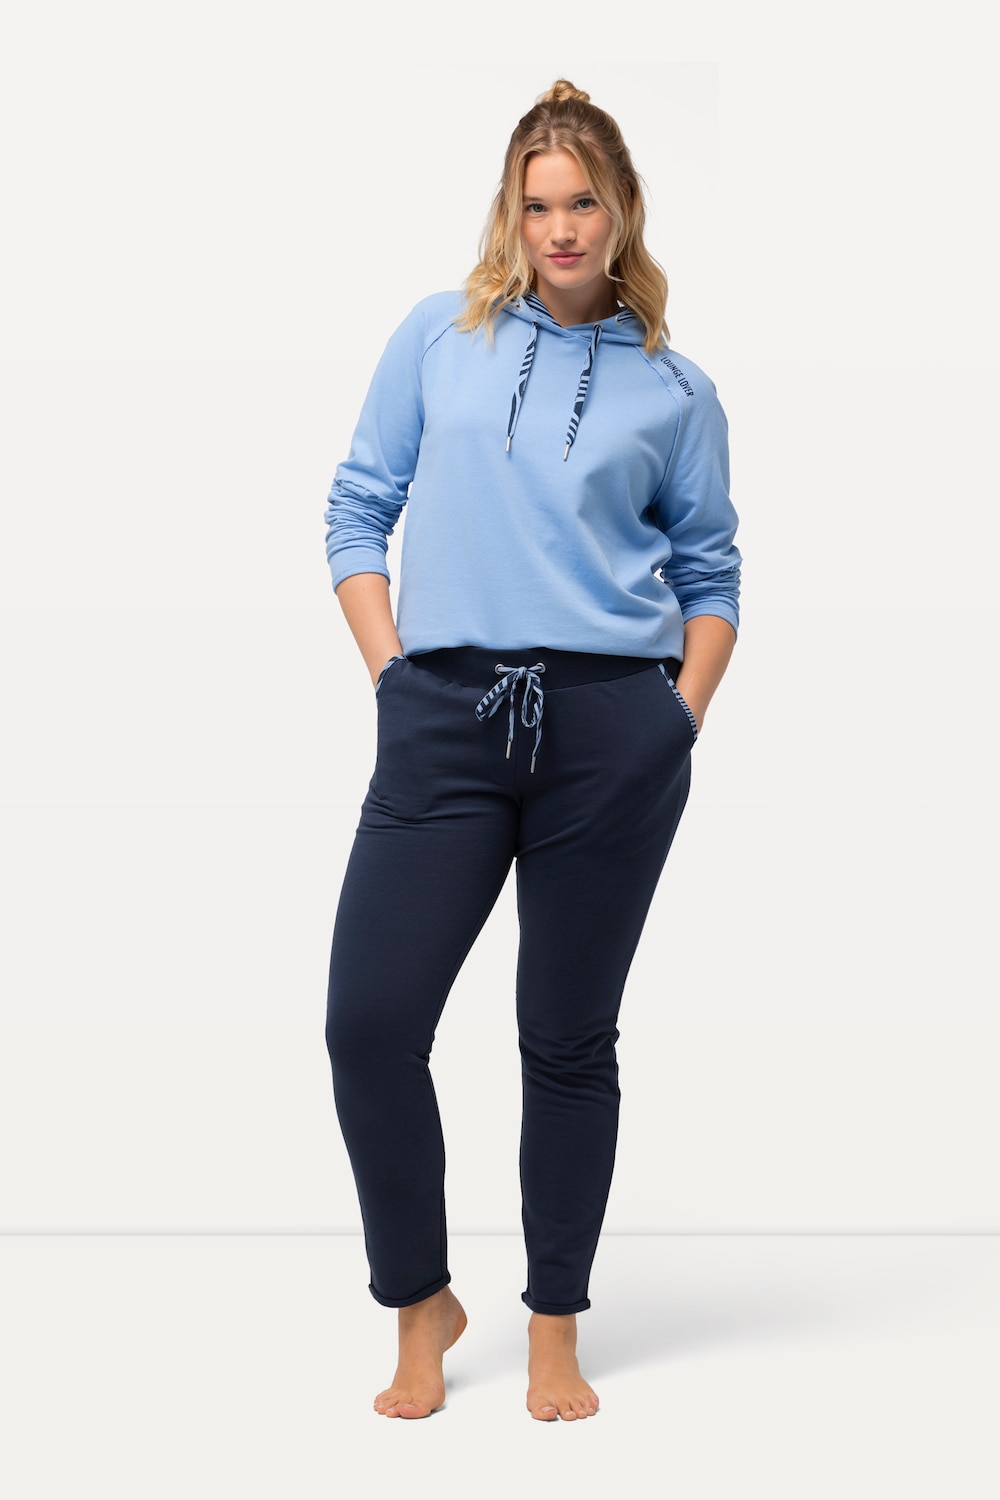 Grote Maten Loungewear broek, Dames, blauw, Maat: 42/44, Katoen/Polyester, Ulla Popken